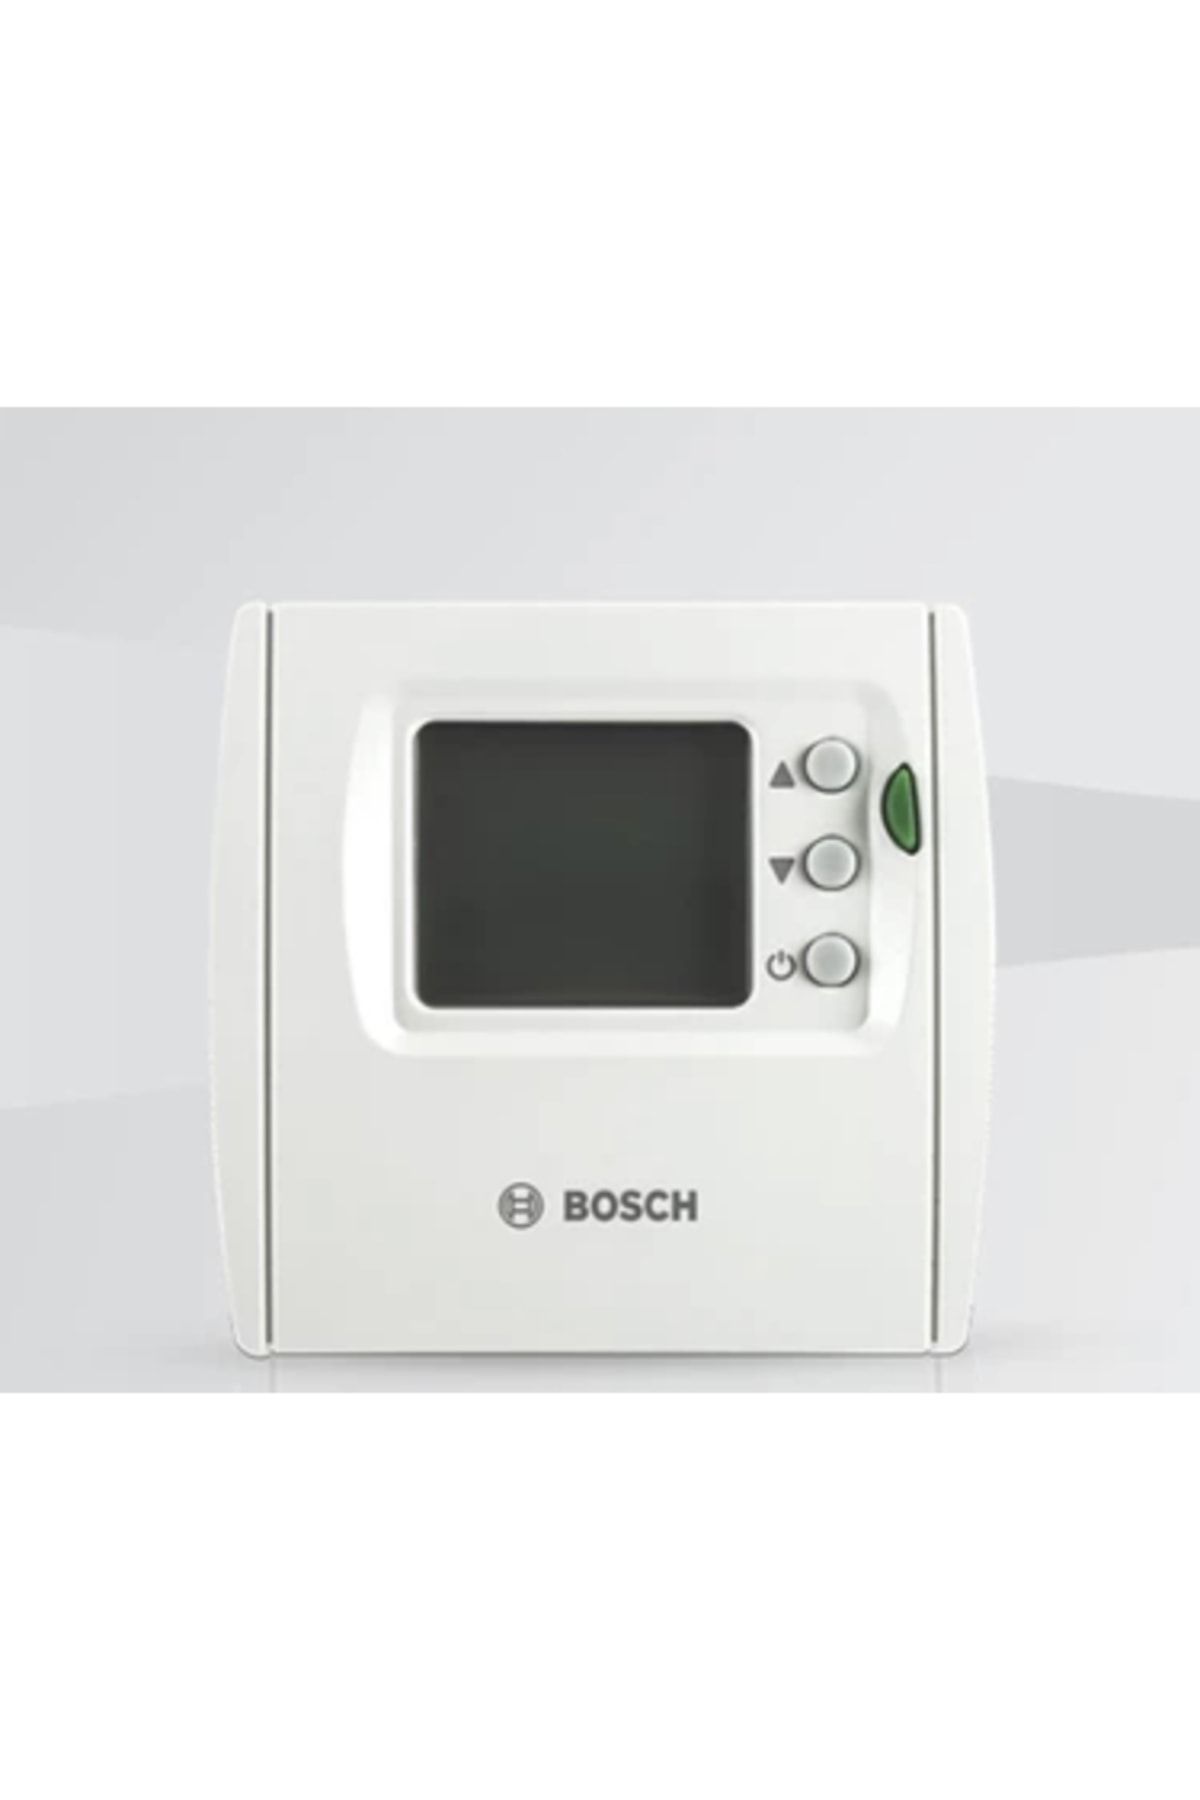 Bosch Tr 24 Rf Kablosuz On/off Oda Termostadı